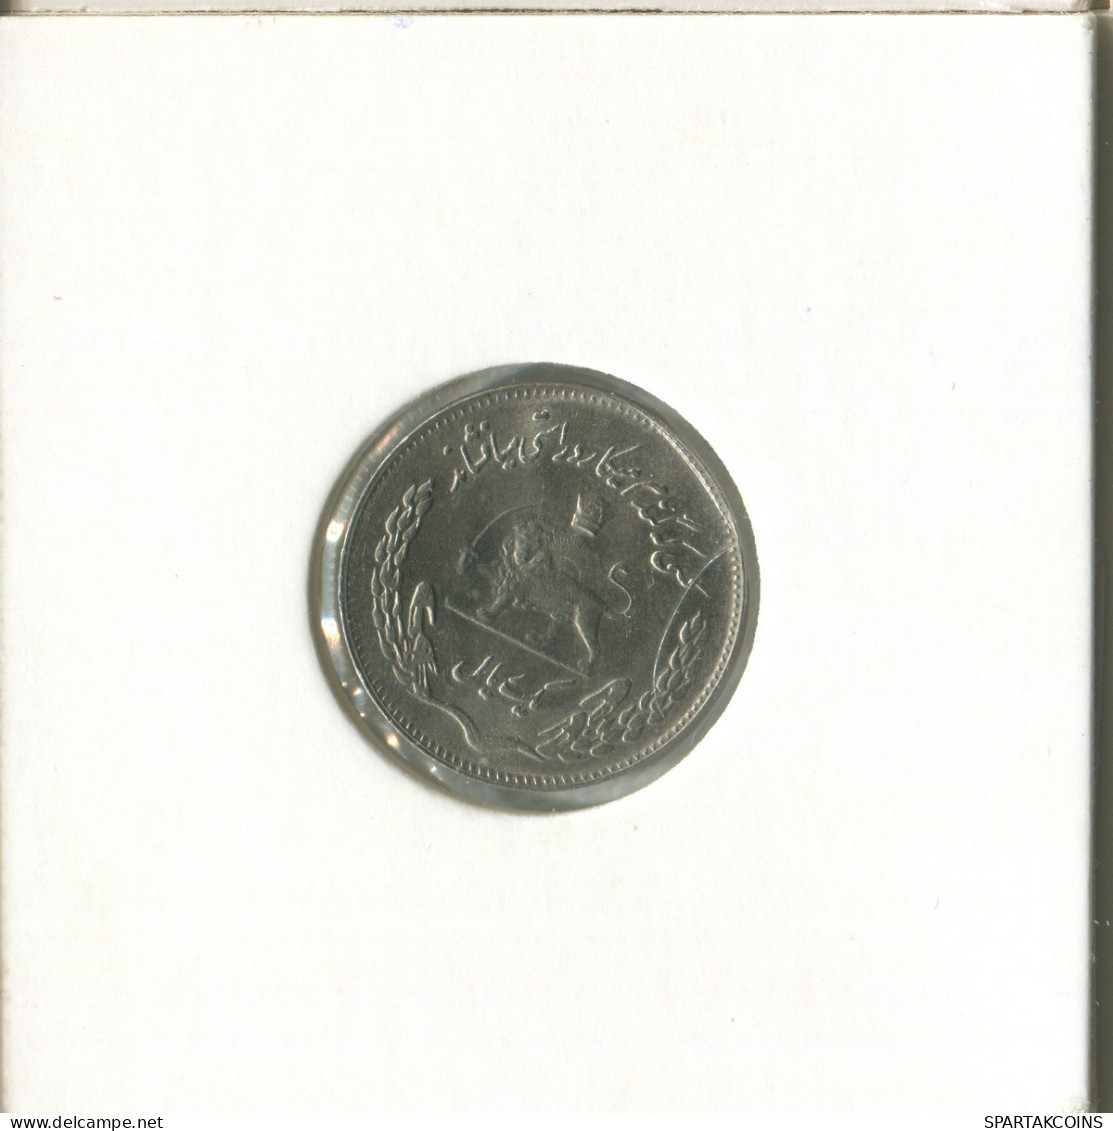 IRAN 1 RIAL 1971 Islamic Coin #EST1073.2.U.A - Irán